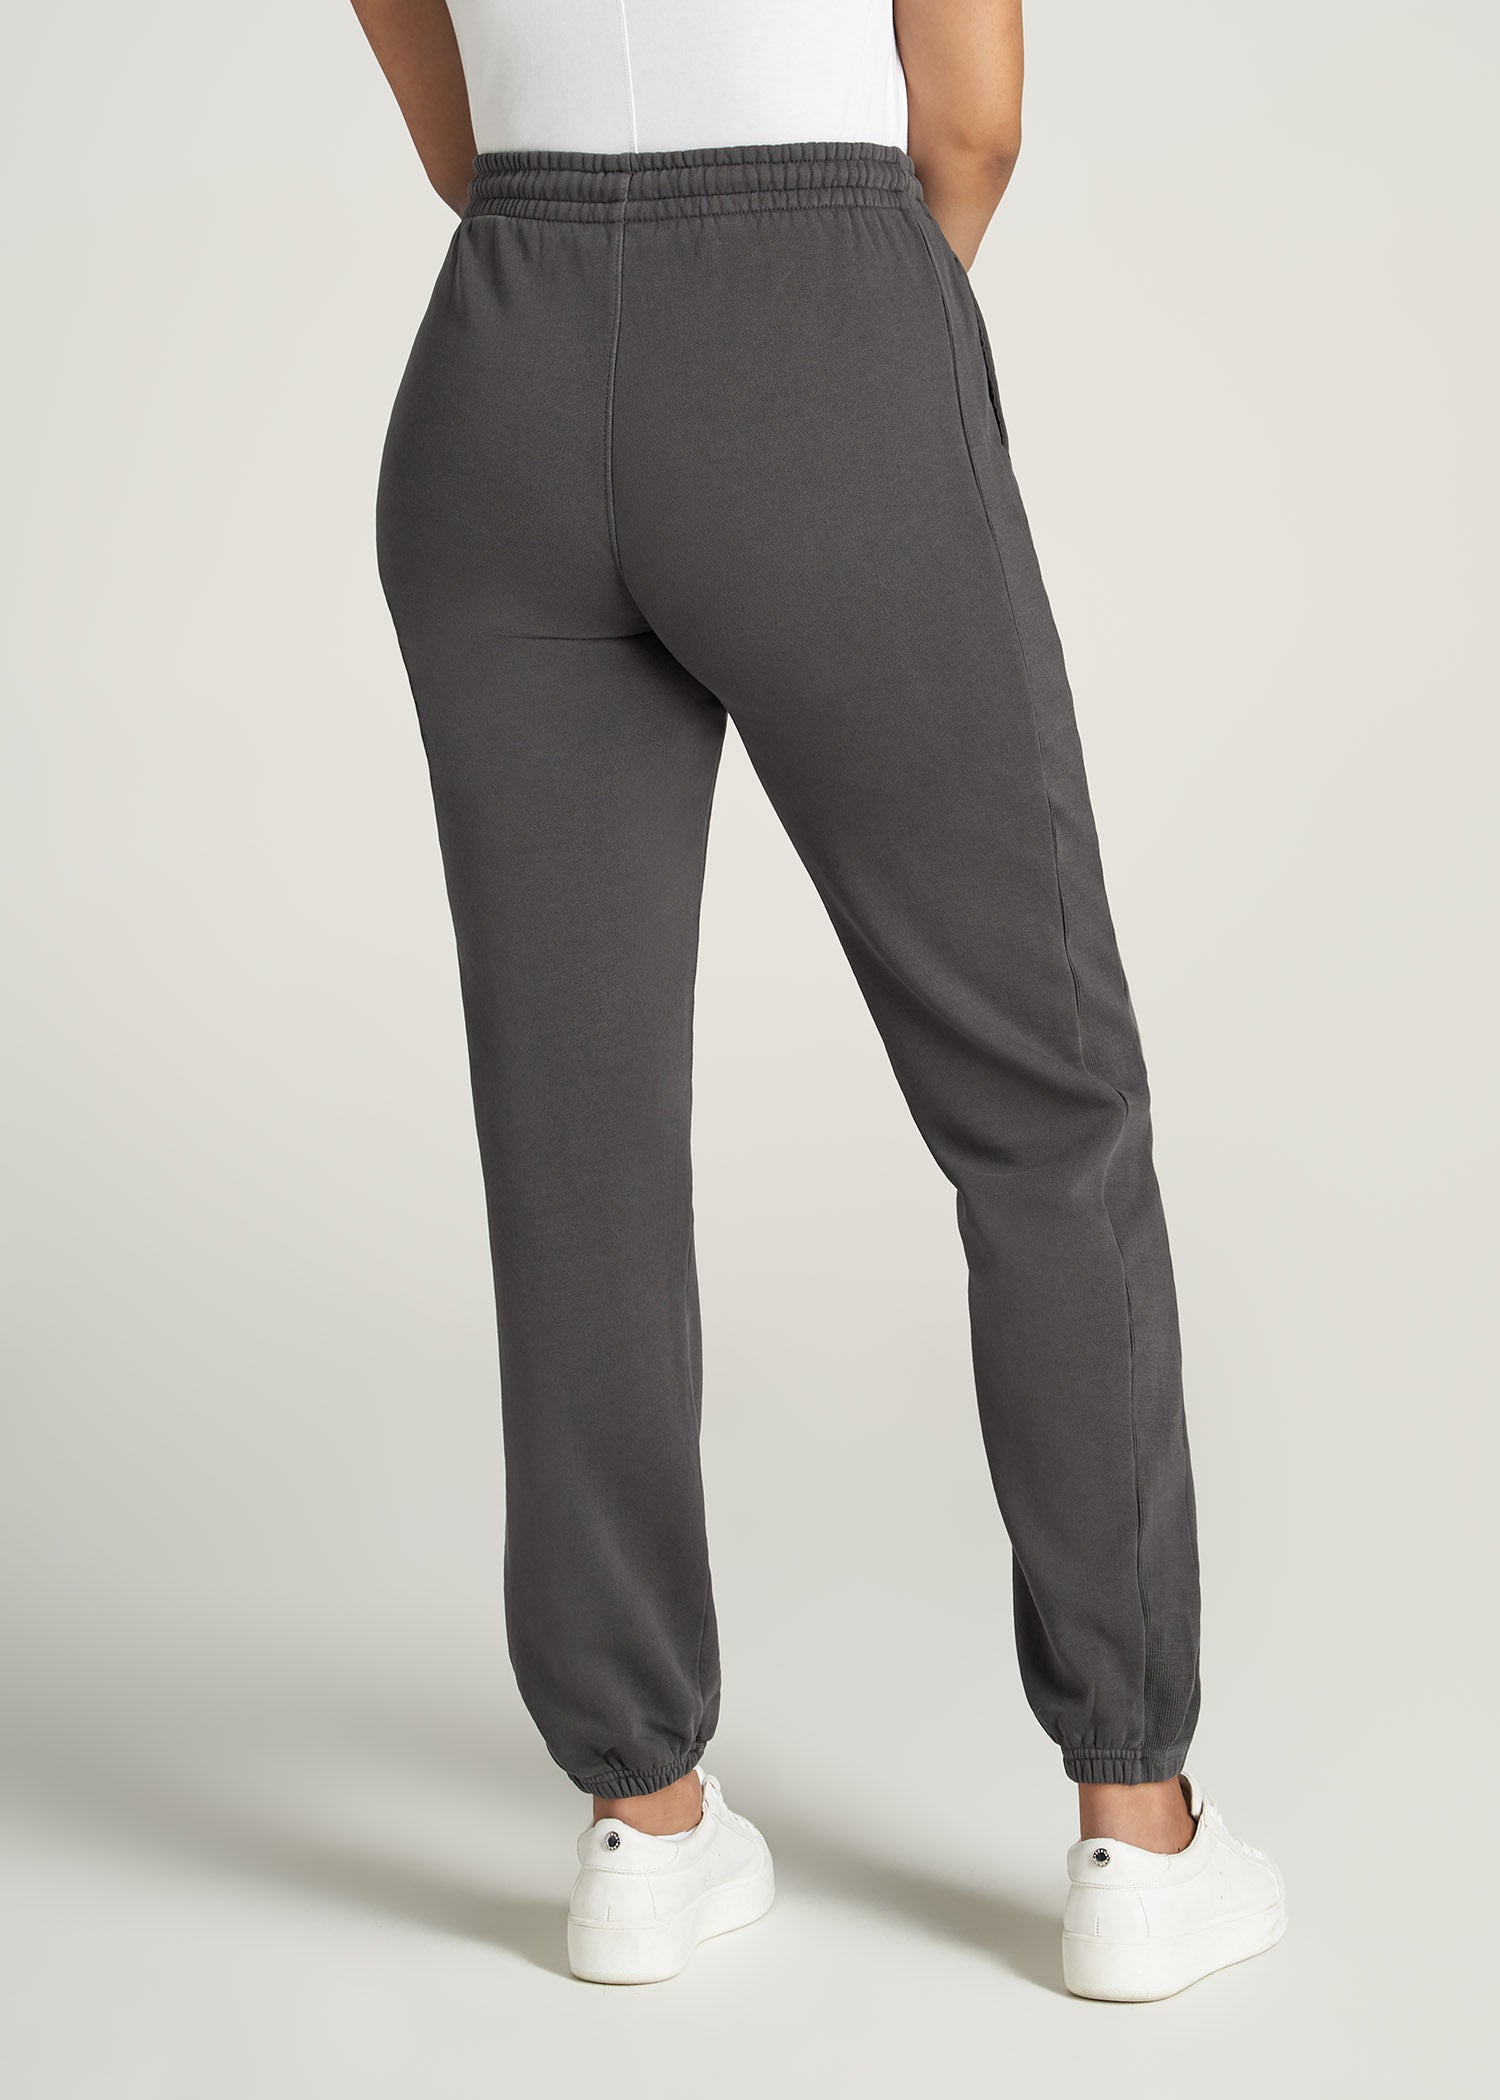 Brilliant Basics Women's Pocket Fleece Track Pants - Khaki - Size Small